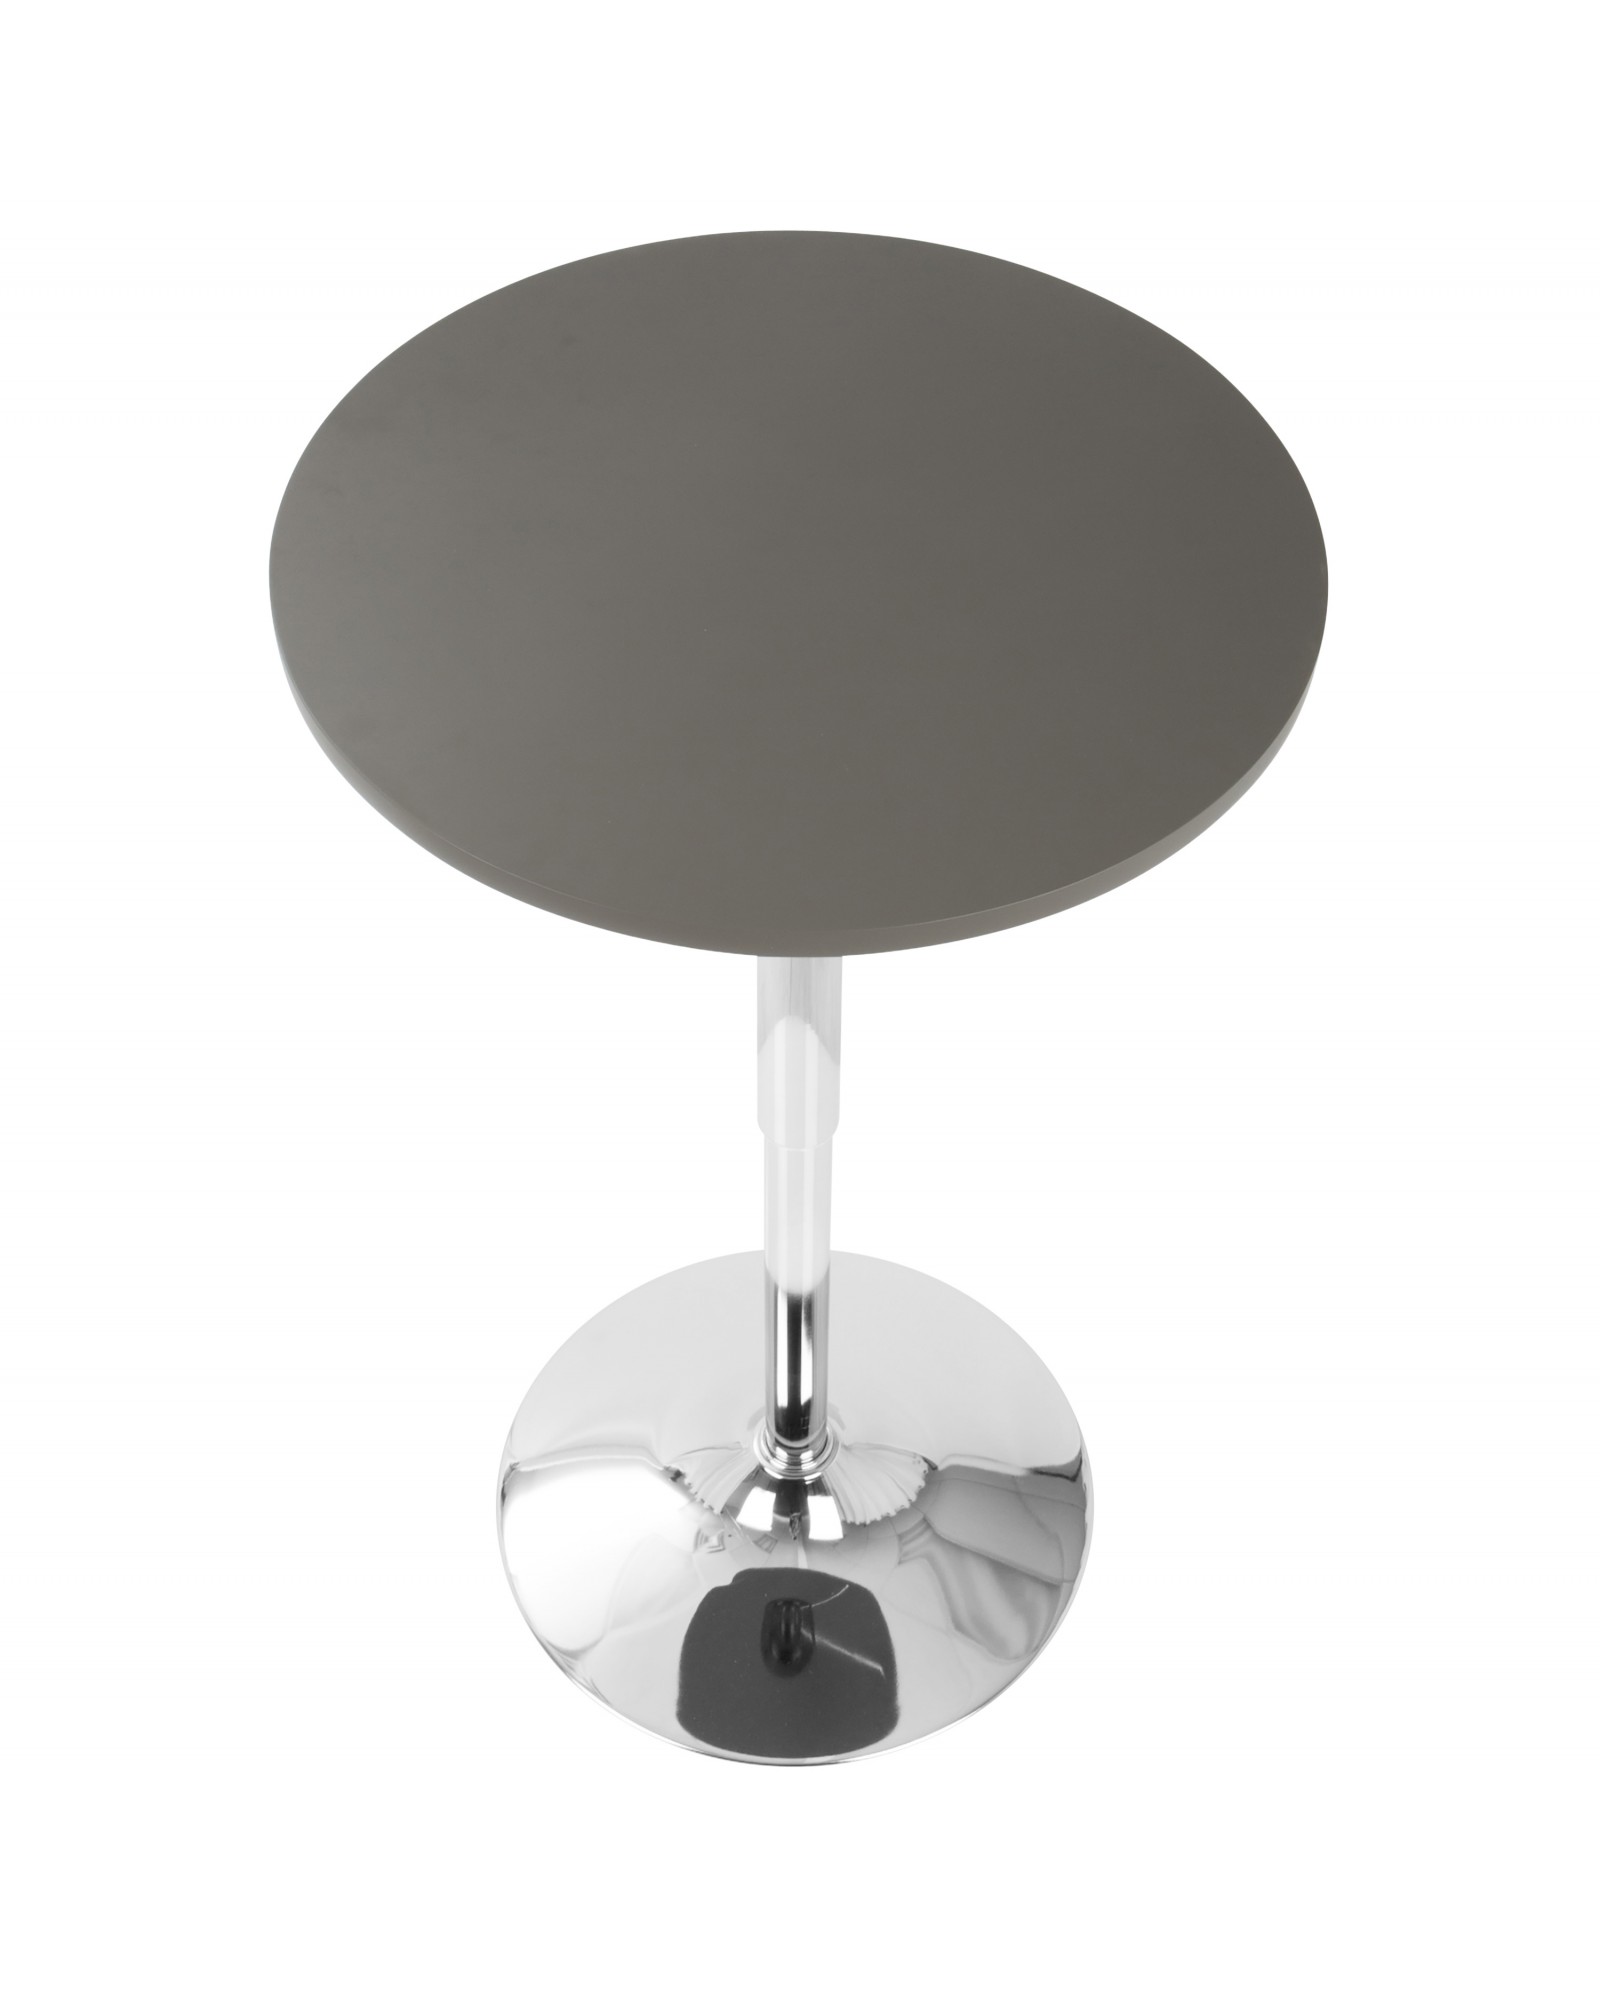 Adjustable Contemporary Bar Table in Grey